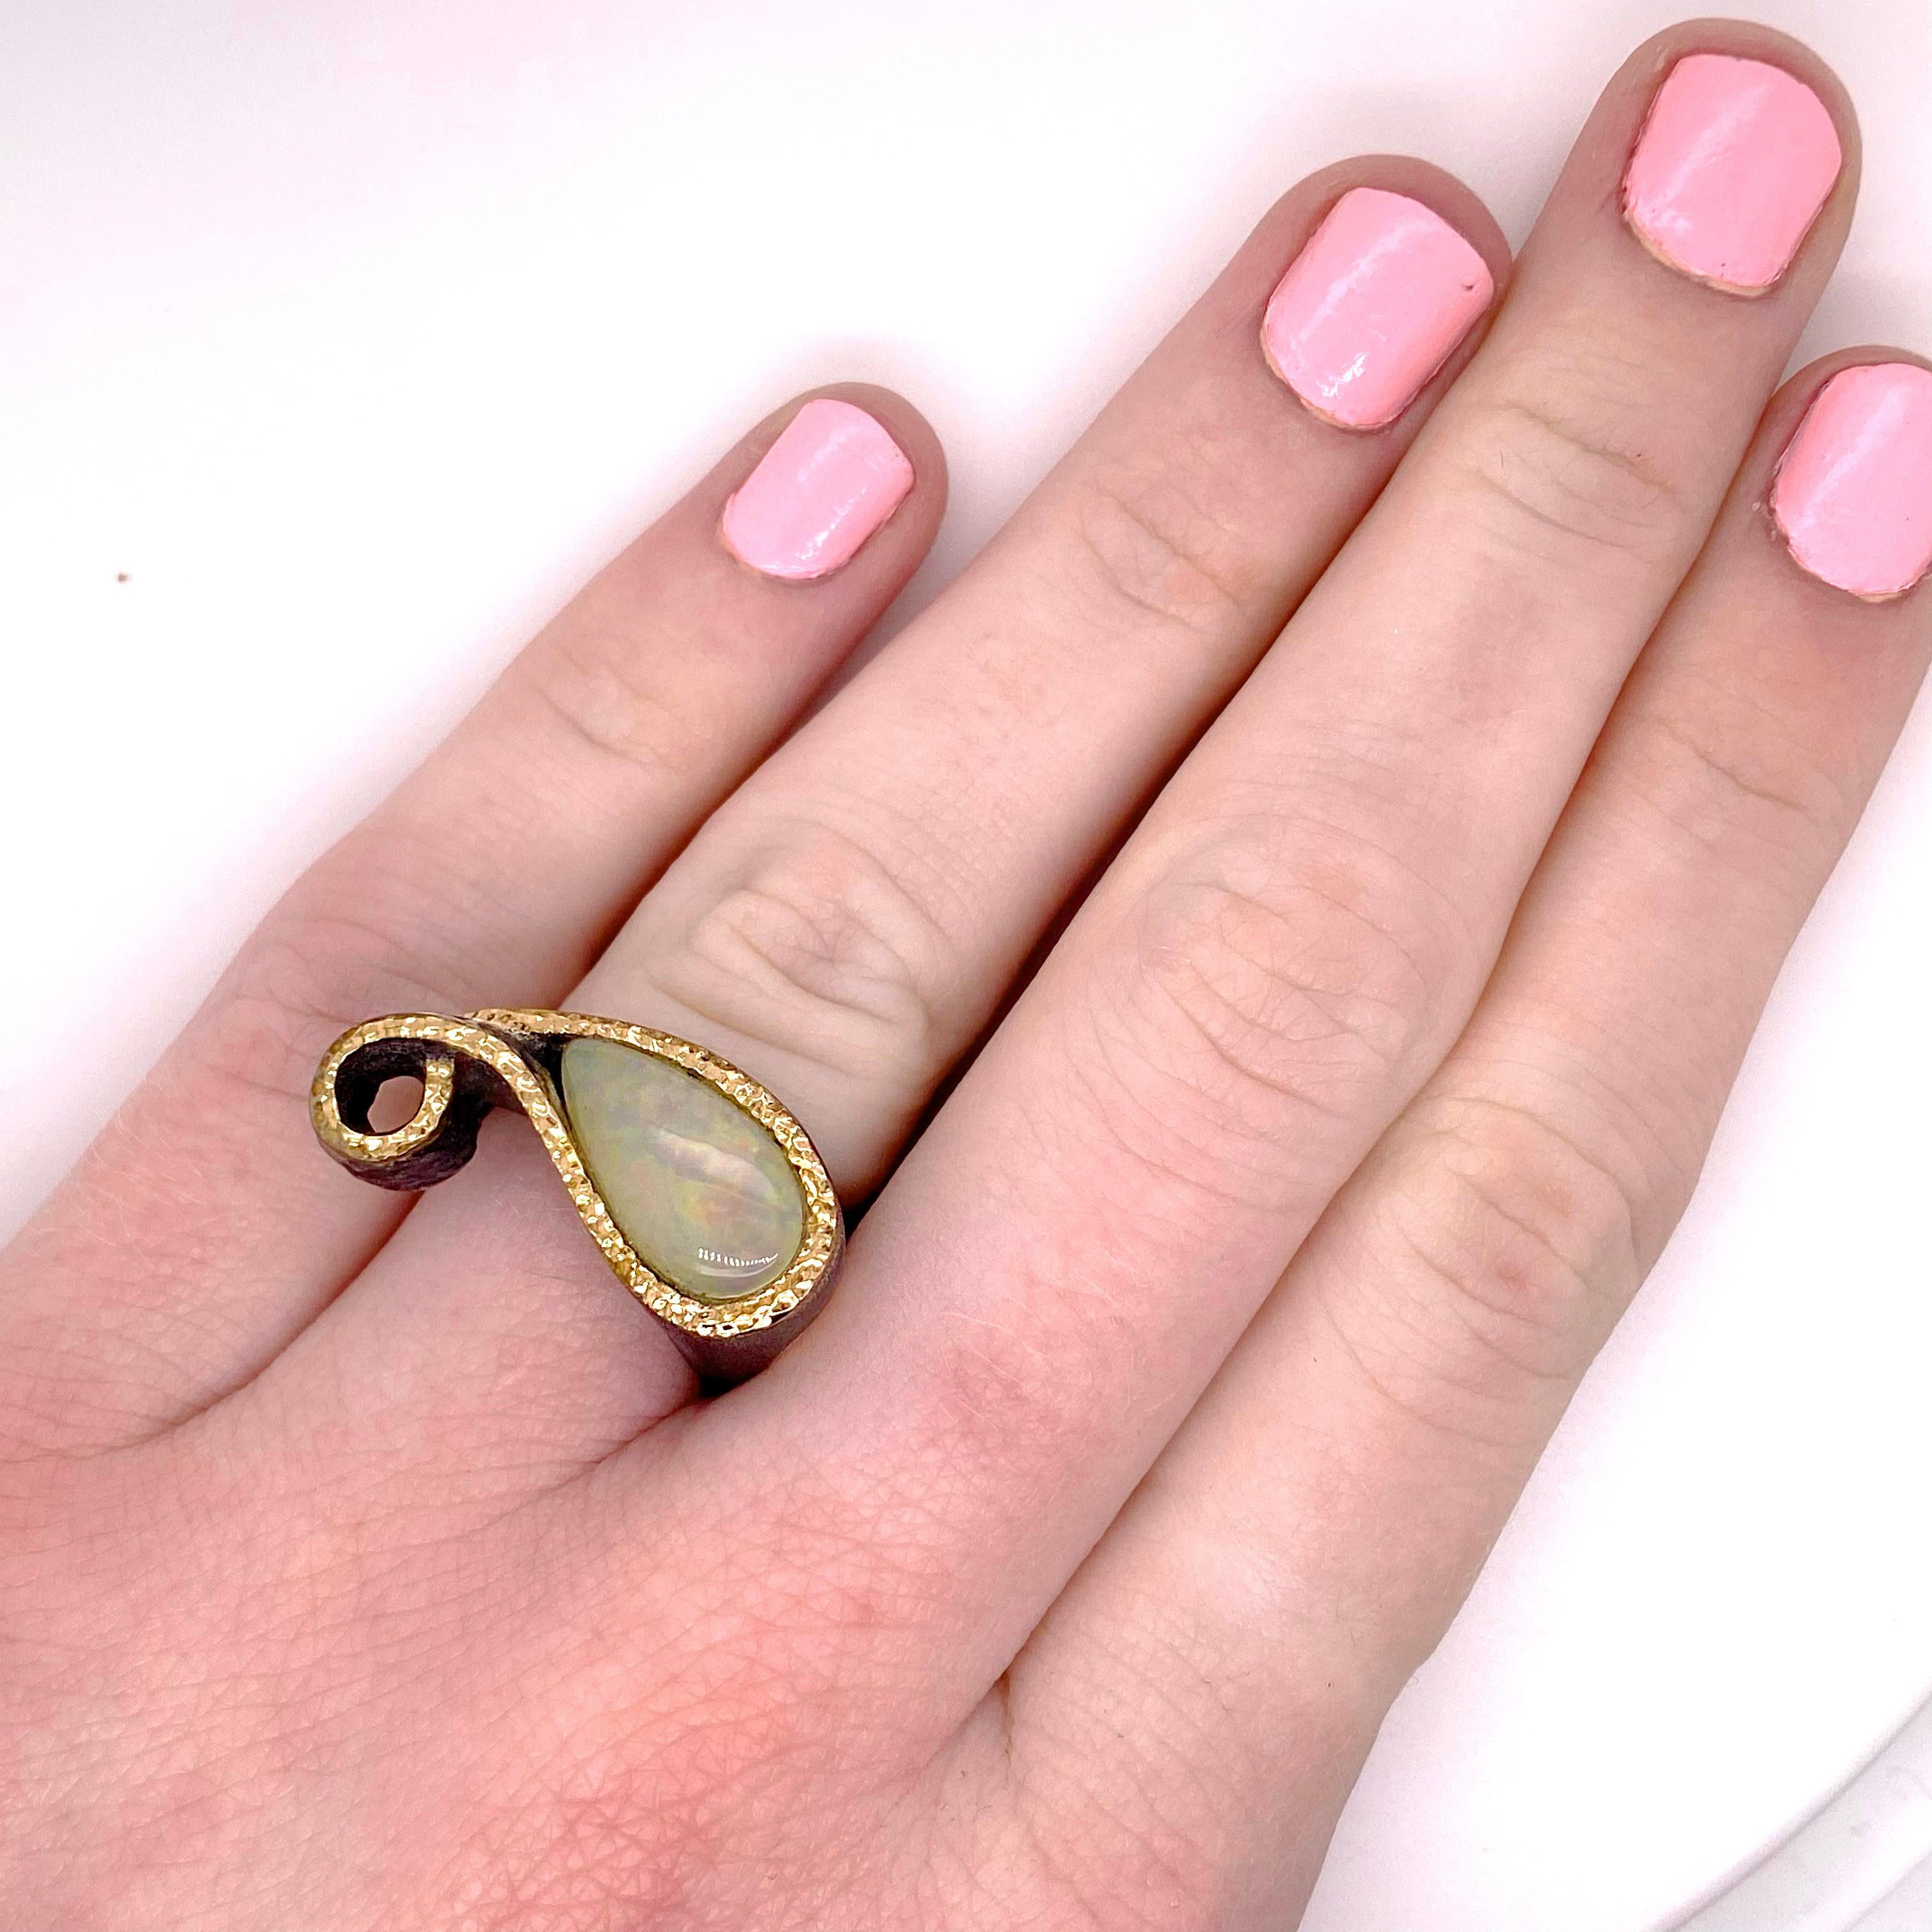 La bague en opale australienne a été fabriquée à la main avec une opale en forme de poire entourée d'une bordure en or. La bague a une forme qui s'adapte parfaitement à vos doigts ! Le dessin comporte deux q bouclés qui forment un adorable motif et